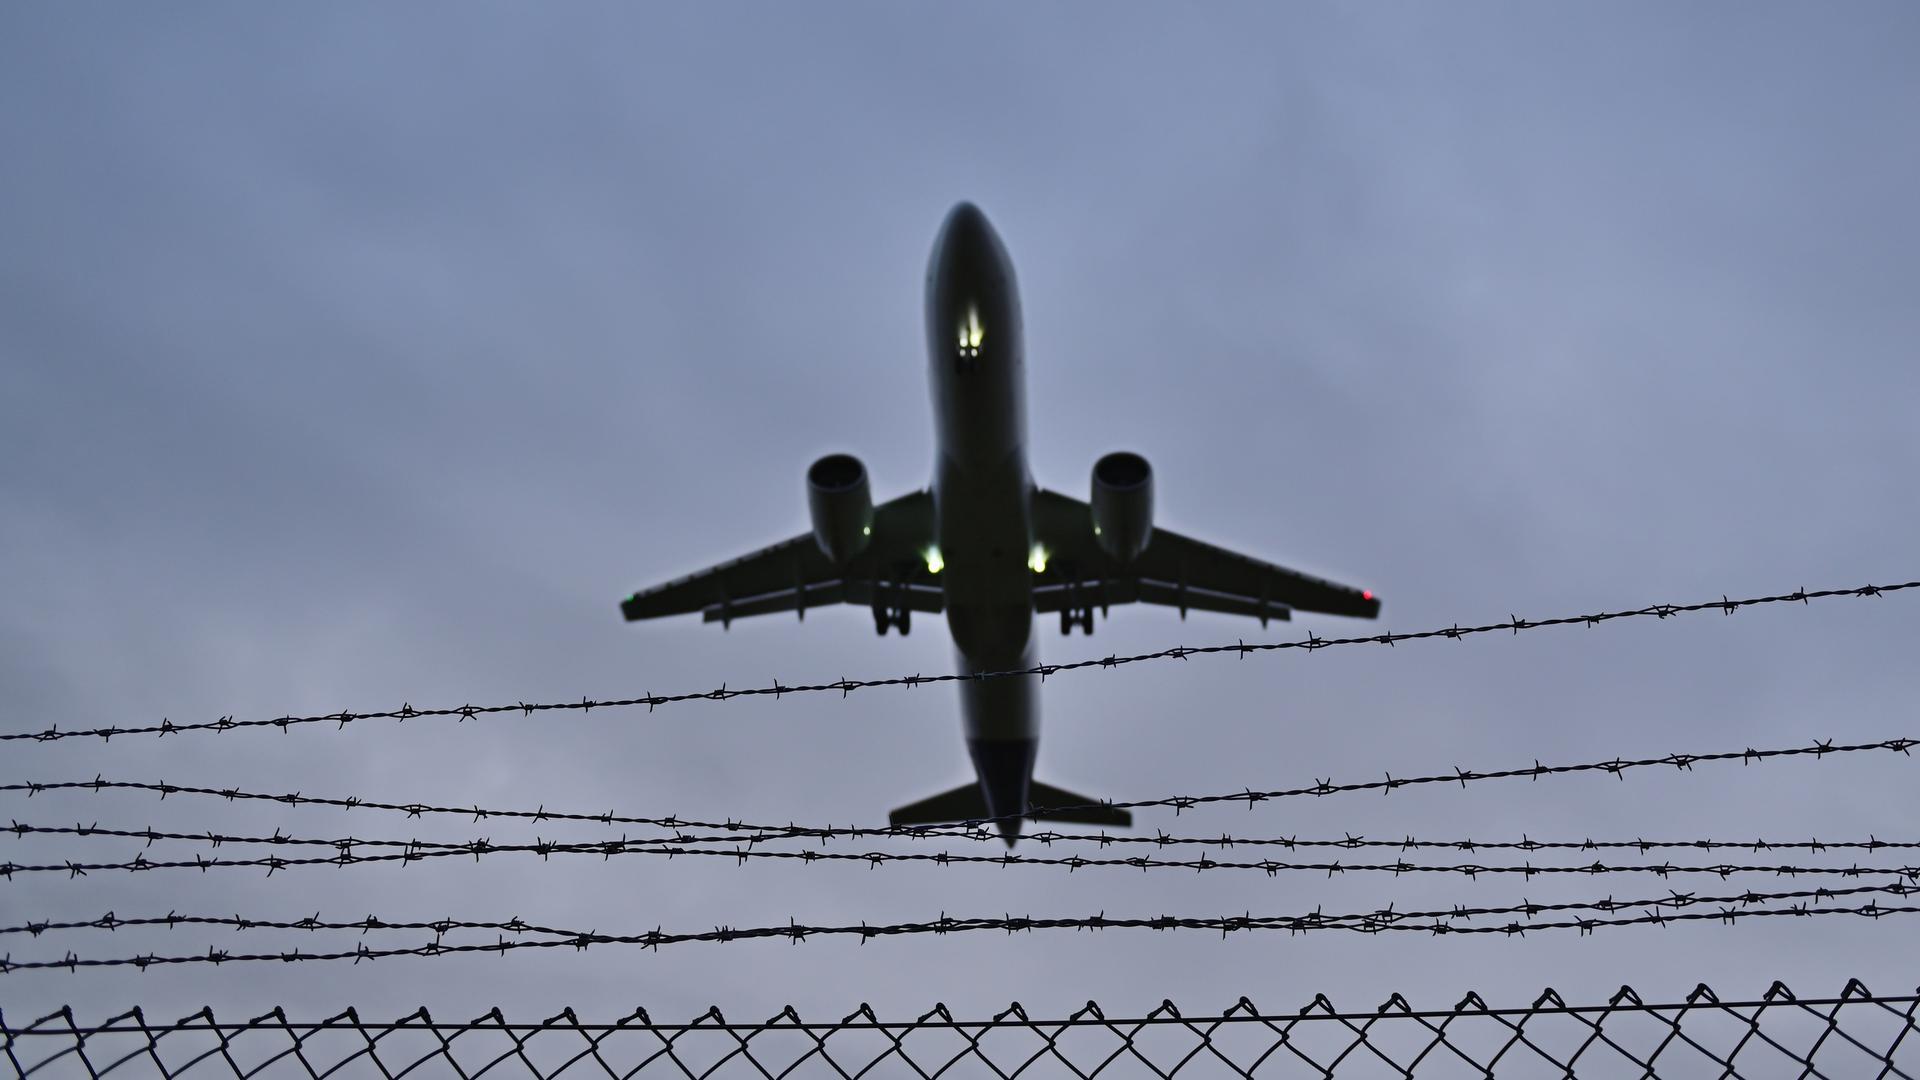 Ein Flugzeug fliegt über einen Stacheldraht-Zaun. Der Himmel ist grau.